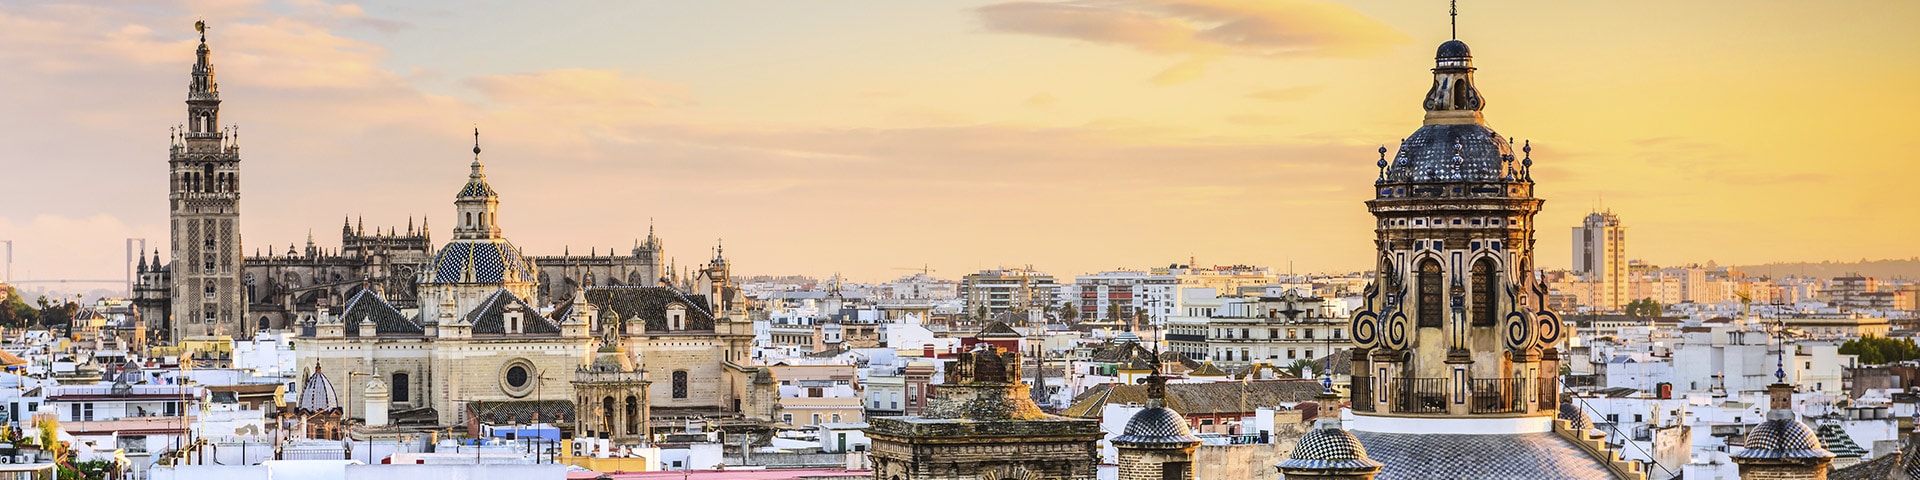 Seville, road trip en andalousie de 10 jours